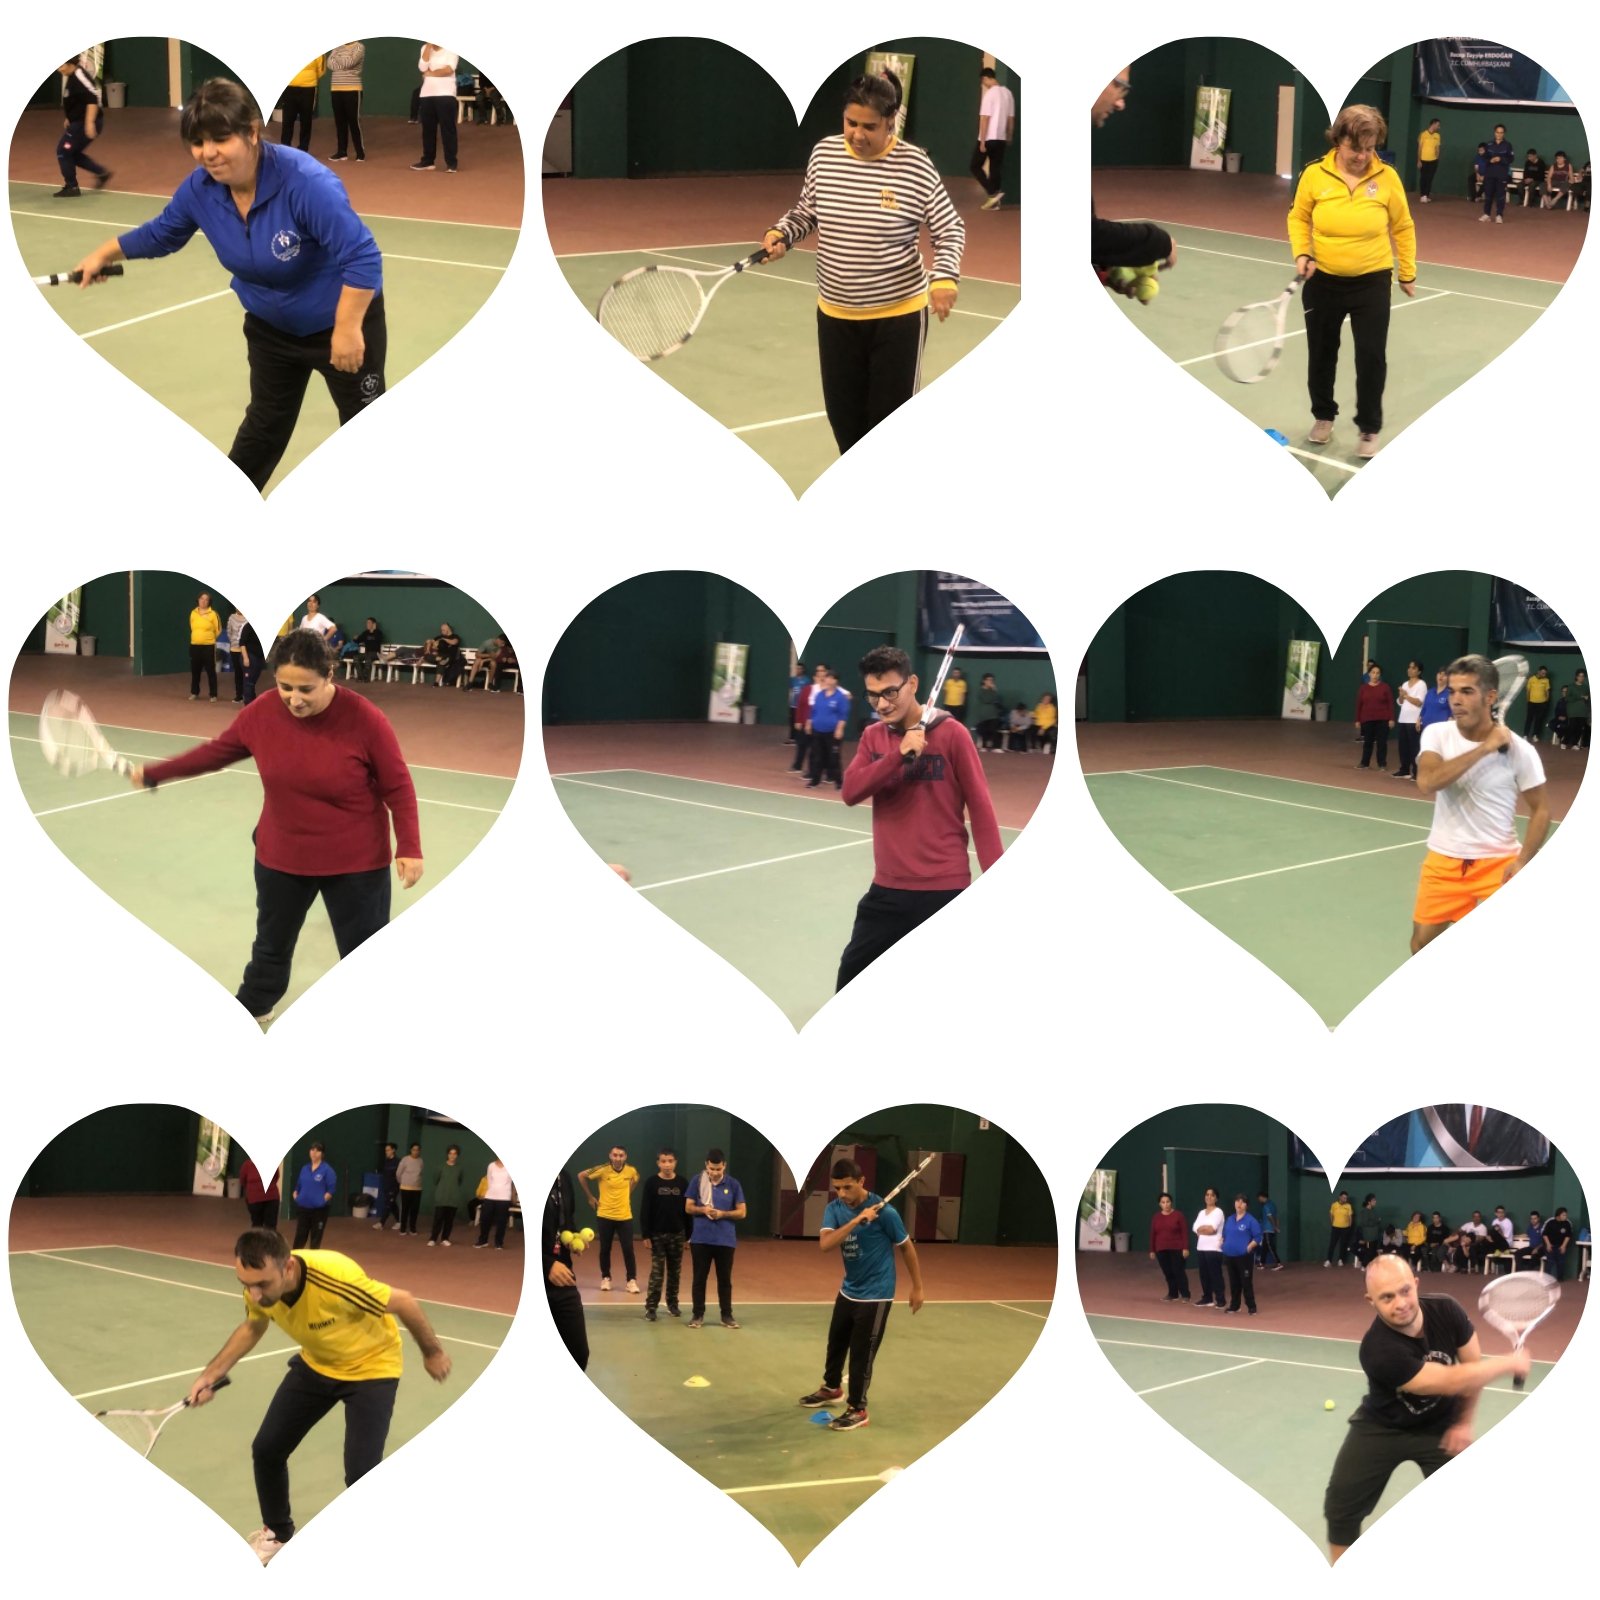 Özel çocuklarımız Olimpik Kort Tenis Salonu'nda Kort Tenisi oynayarak yeteneklerini keşfettiler.😊